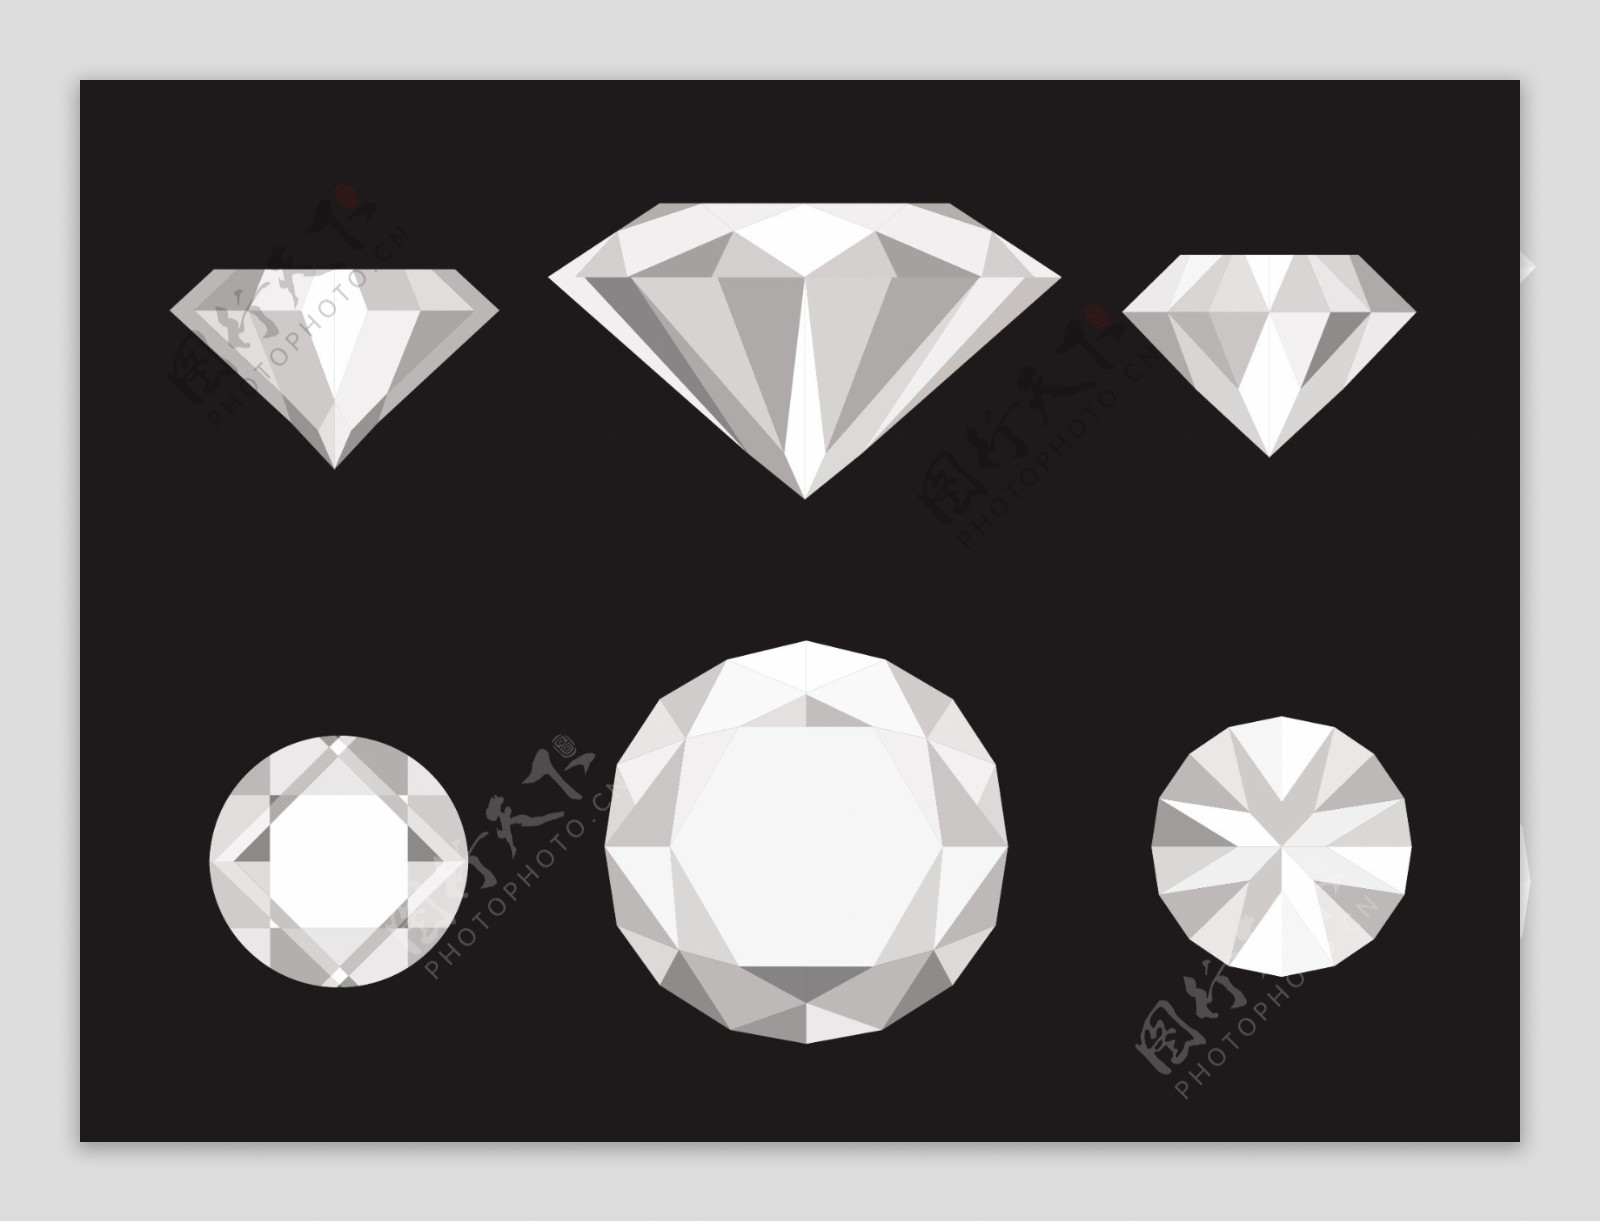 钻石矢量素材